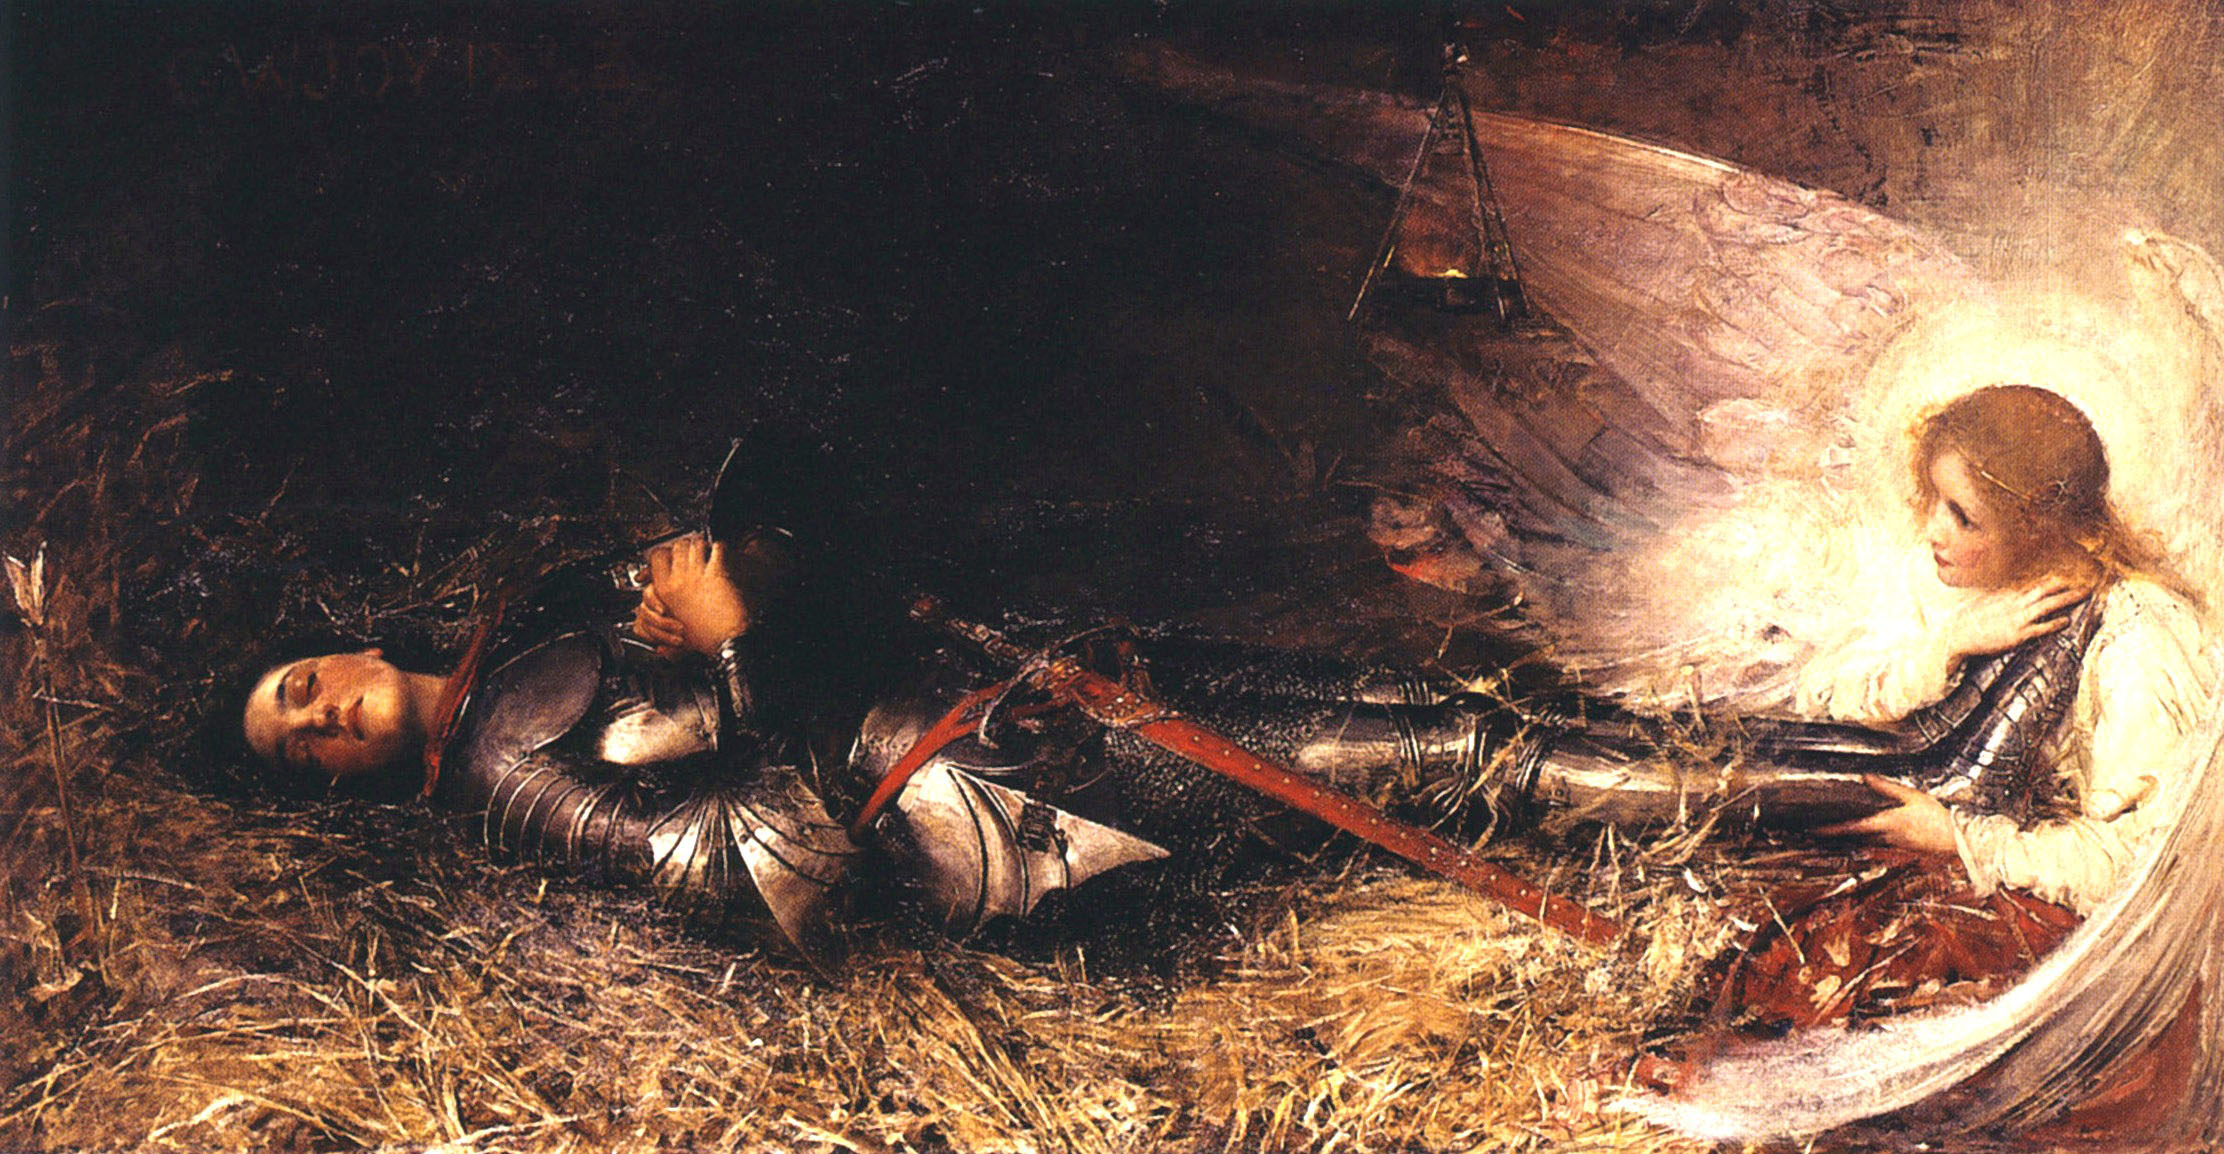 Джордж Уильям Джой. "Ранение Жанны д'Арк". 1895. Музей изобразительных искусств, Руан.